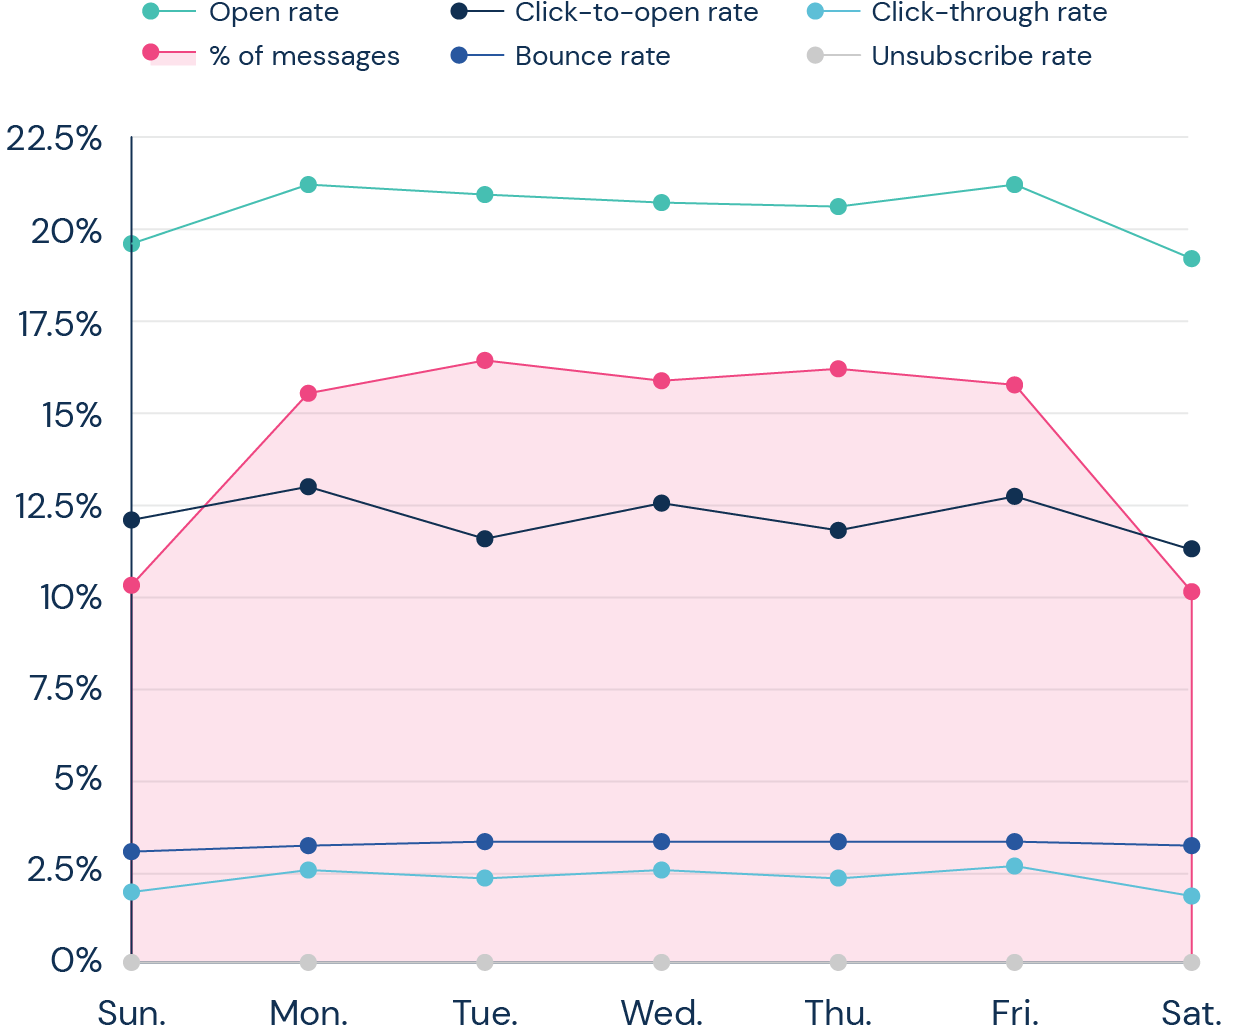 e-posta kampanyalarının ortalama sonuçlarının grafiği